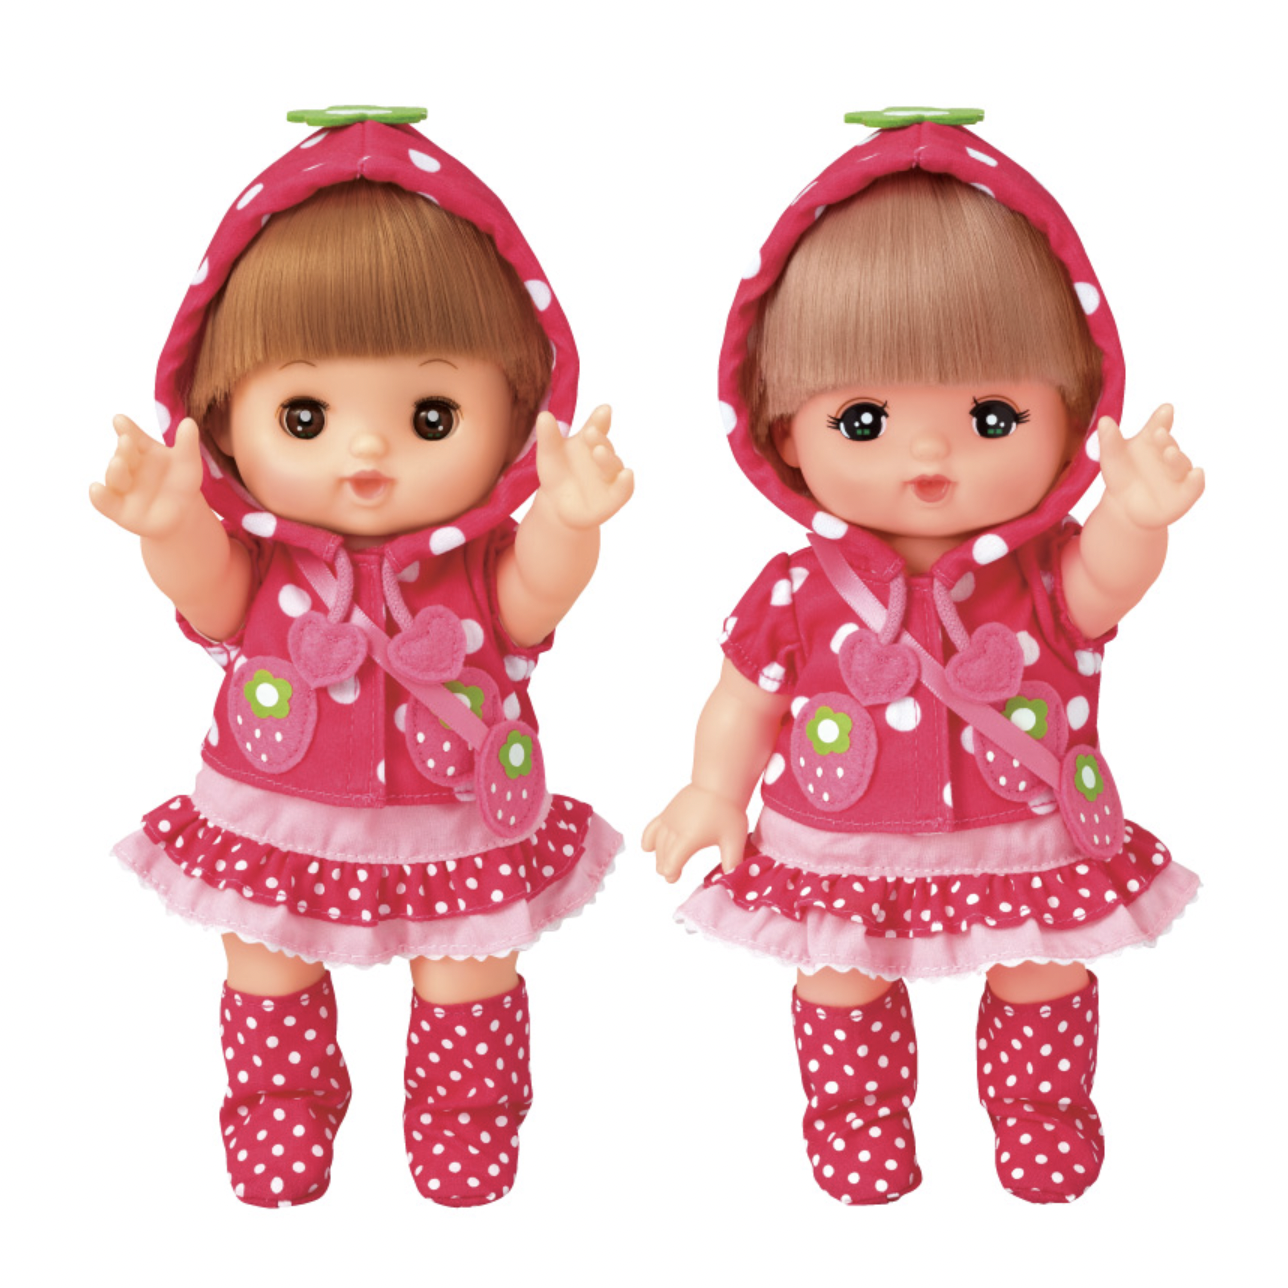 เมลจัง (MELL CHAN®) ชุดเมลจัง ชุดแจ็คเก็ต ลายสตรอเบอร์รี่ Strawberry Jacket ชุดตุ๊กตา Mel-chan ตุ๊กตาเมลจัง Mel-chan ของเล่นญี่ปุ่น ลิขสิทธิ์แท้ พร้อมส่ง